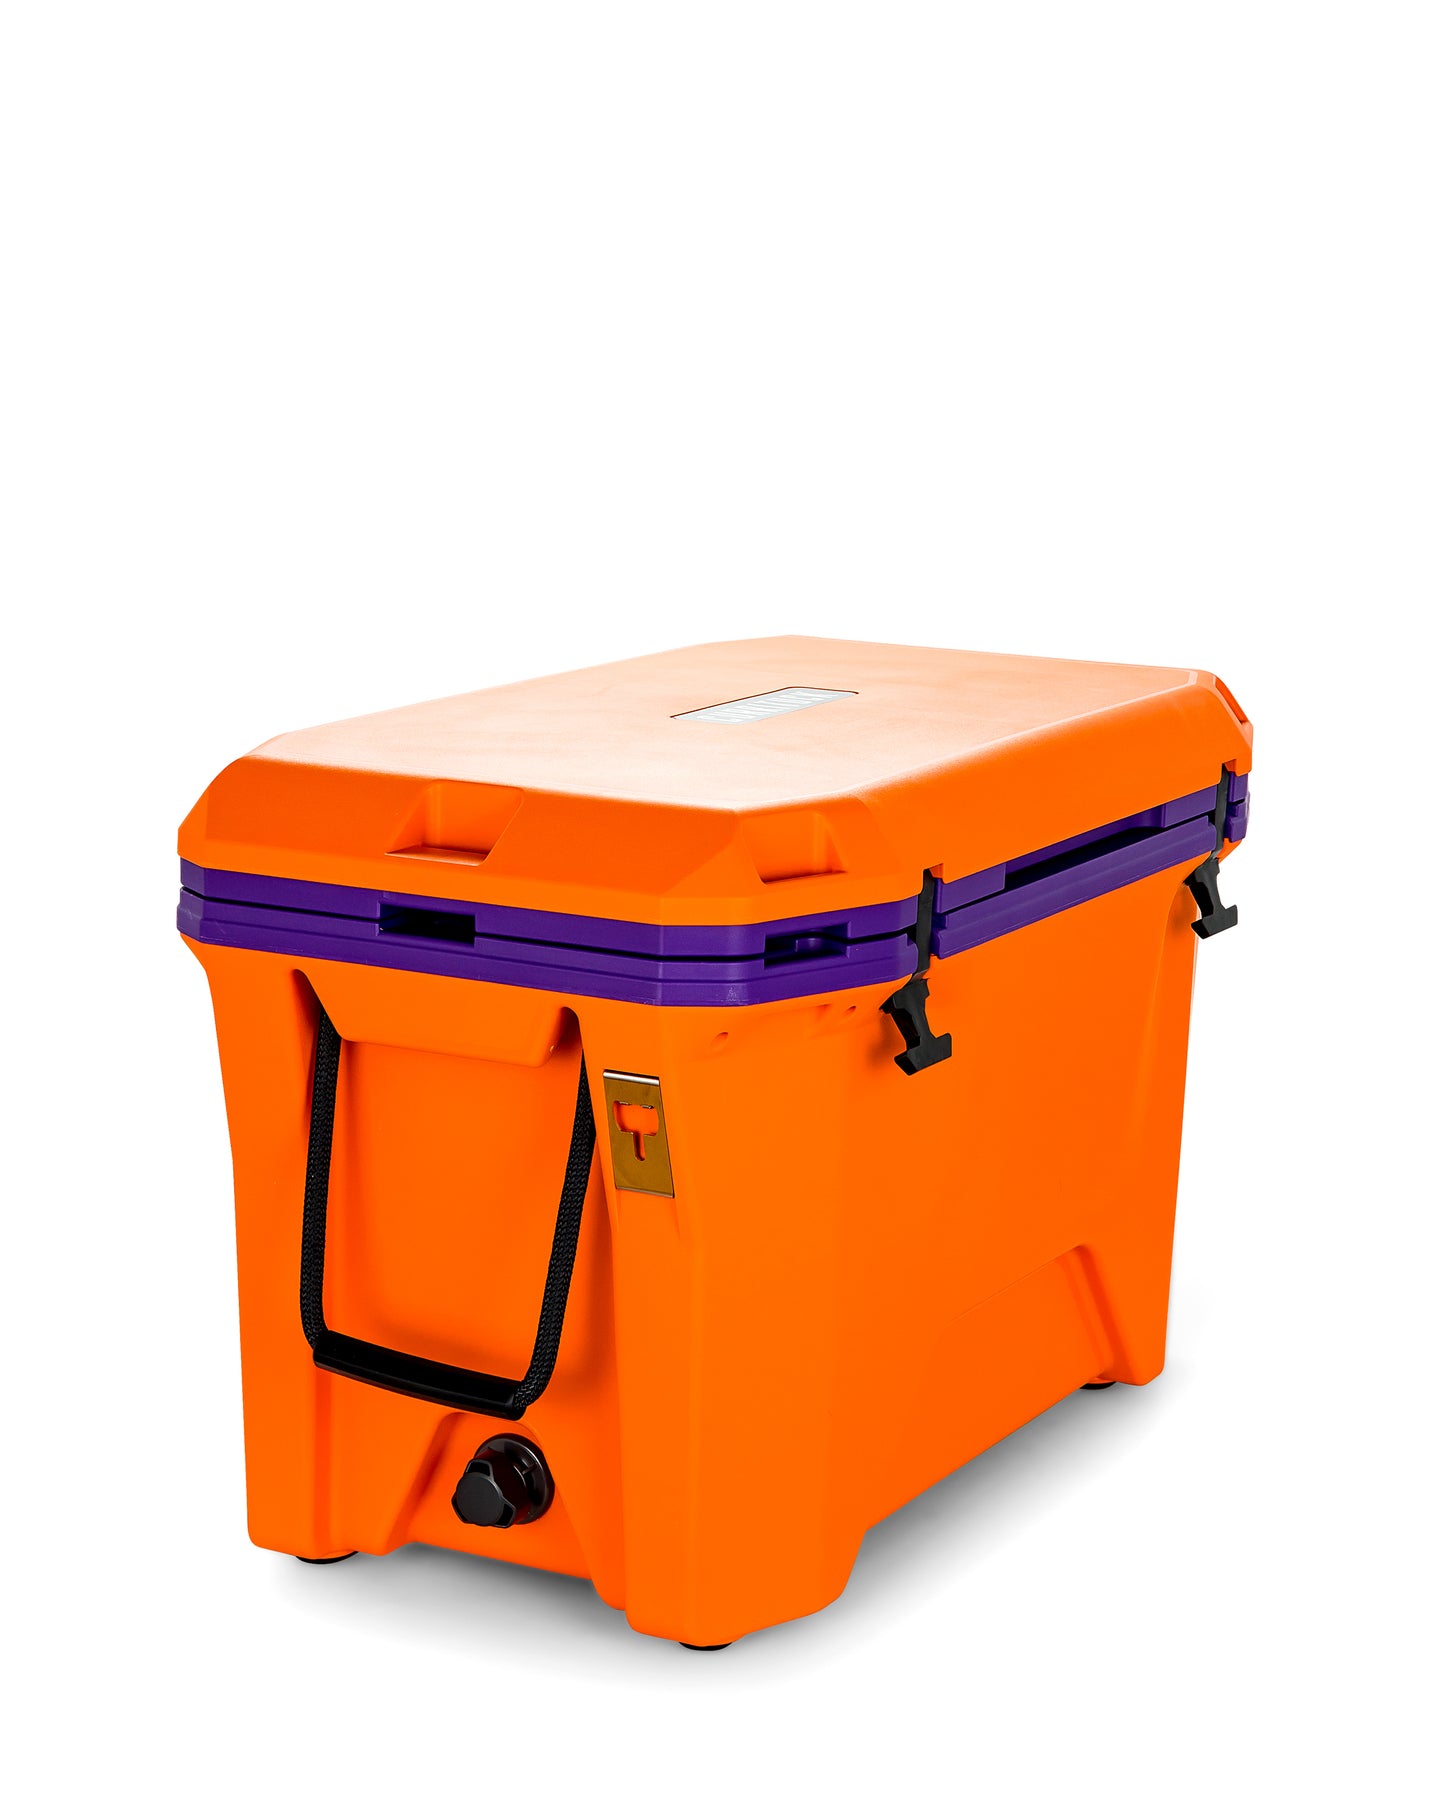 Currituck 50 Quart Premium Cooler - Orange & Purple